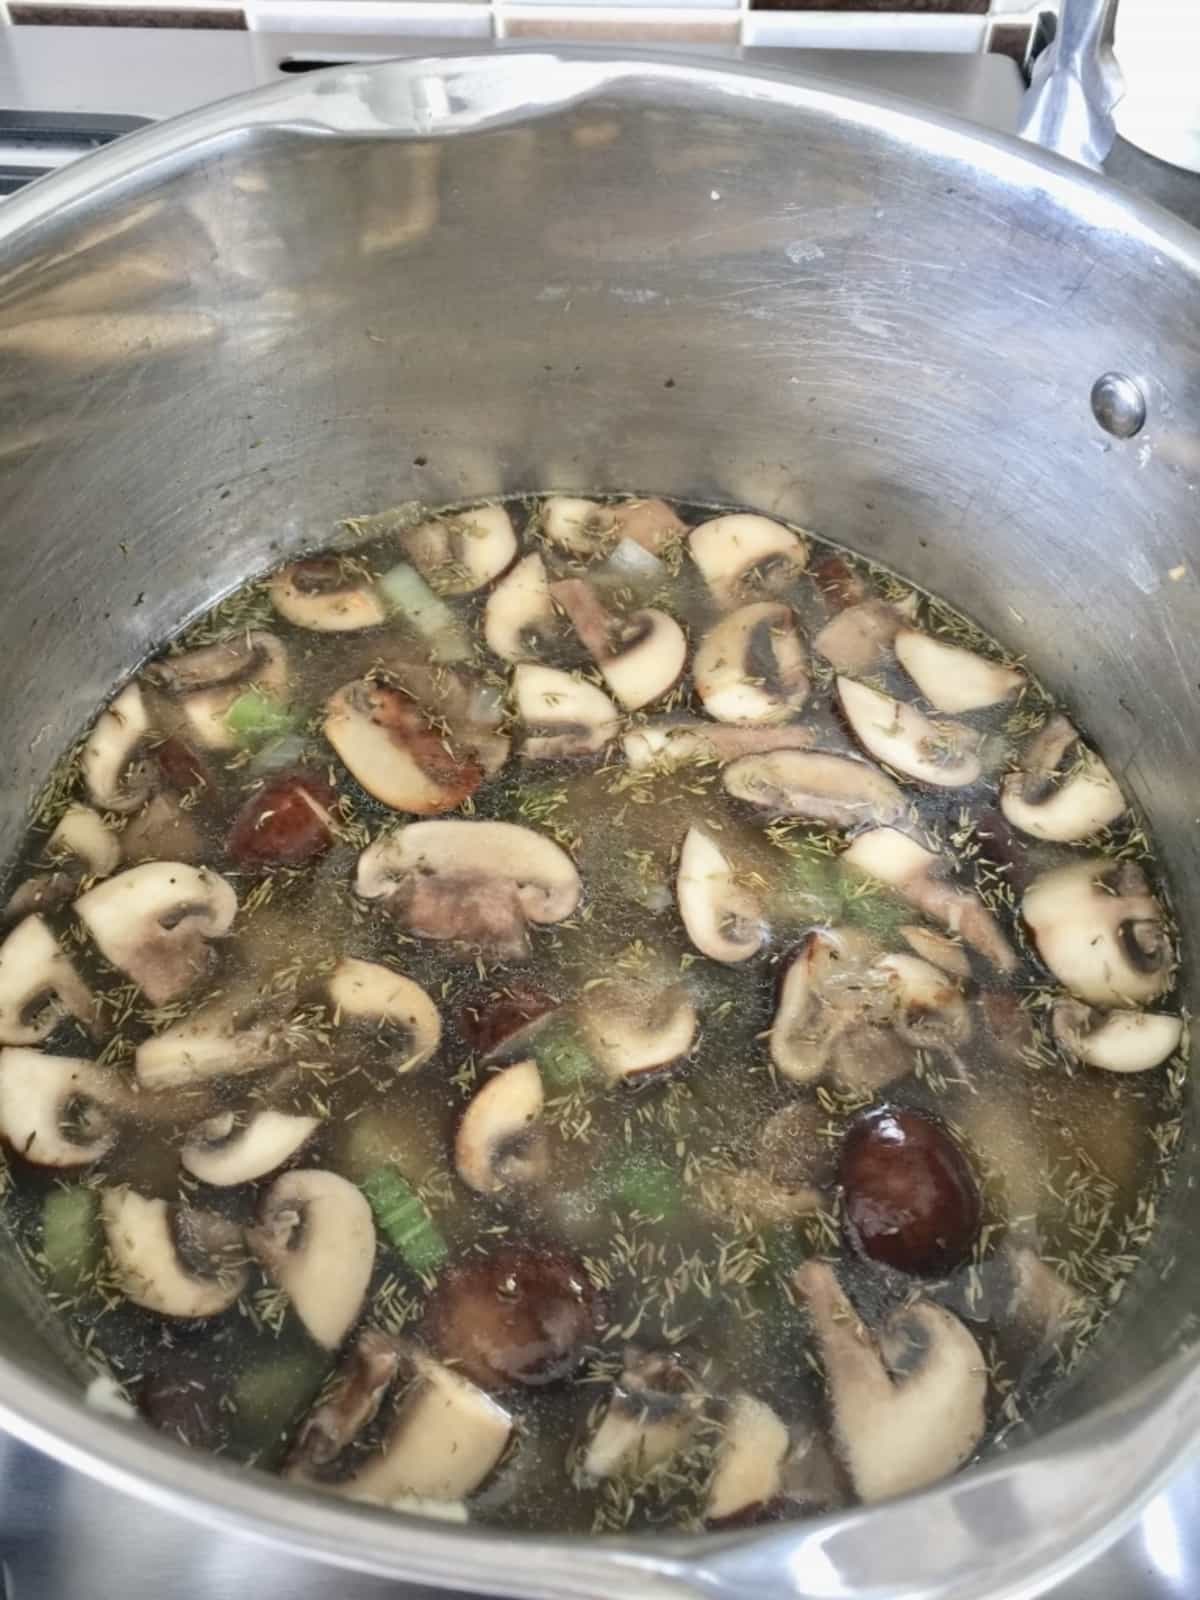 Sliced mushrooms simmering in a pot.